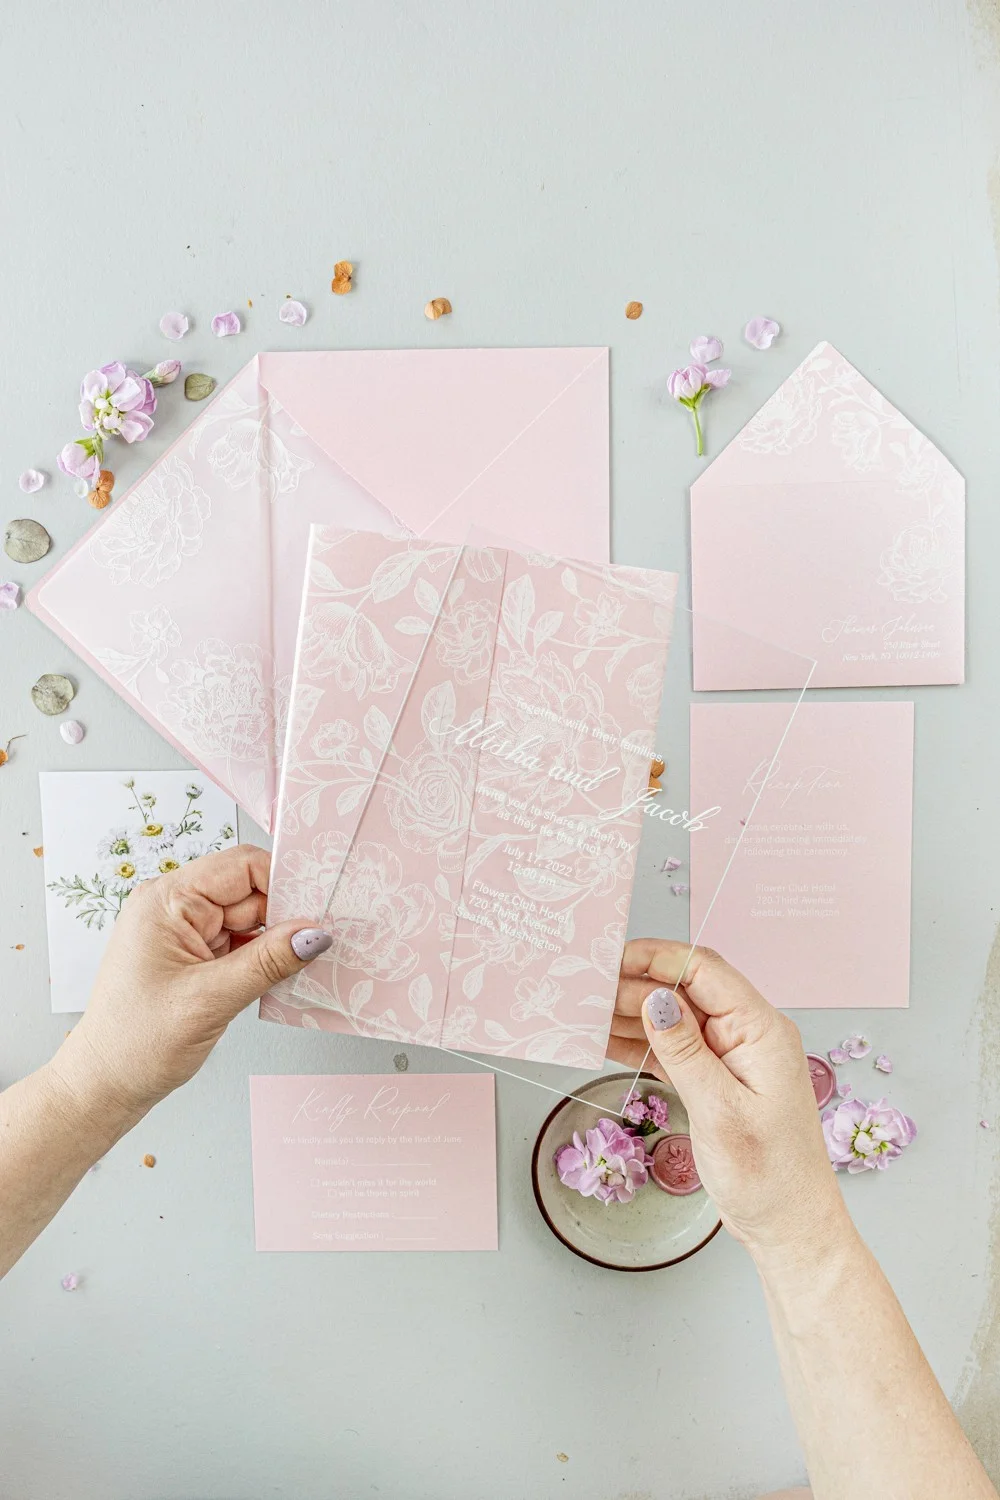 Invitaciones de boda en acrílico o cristal, invitaciones de boda en rosa palo, invitaciones en rosa transparente